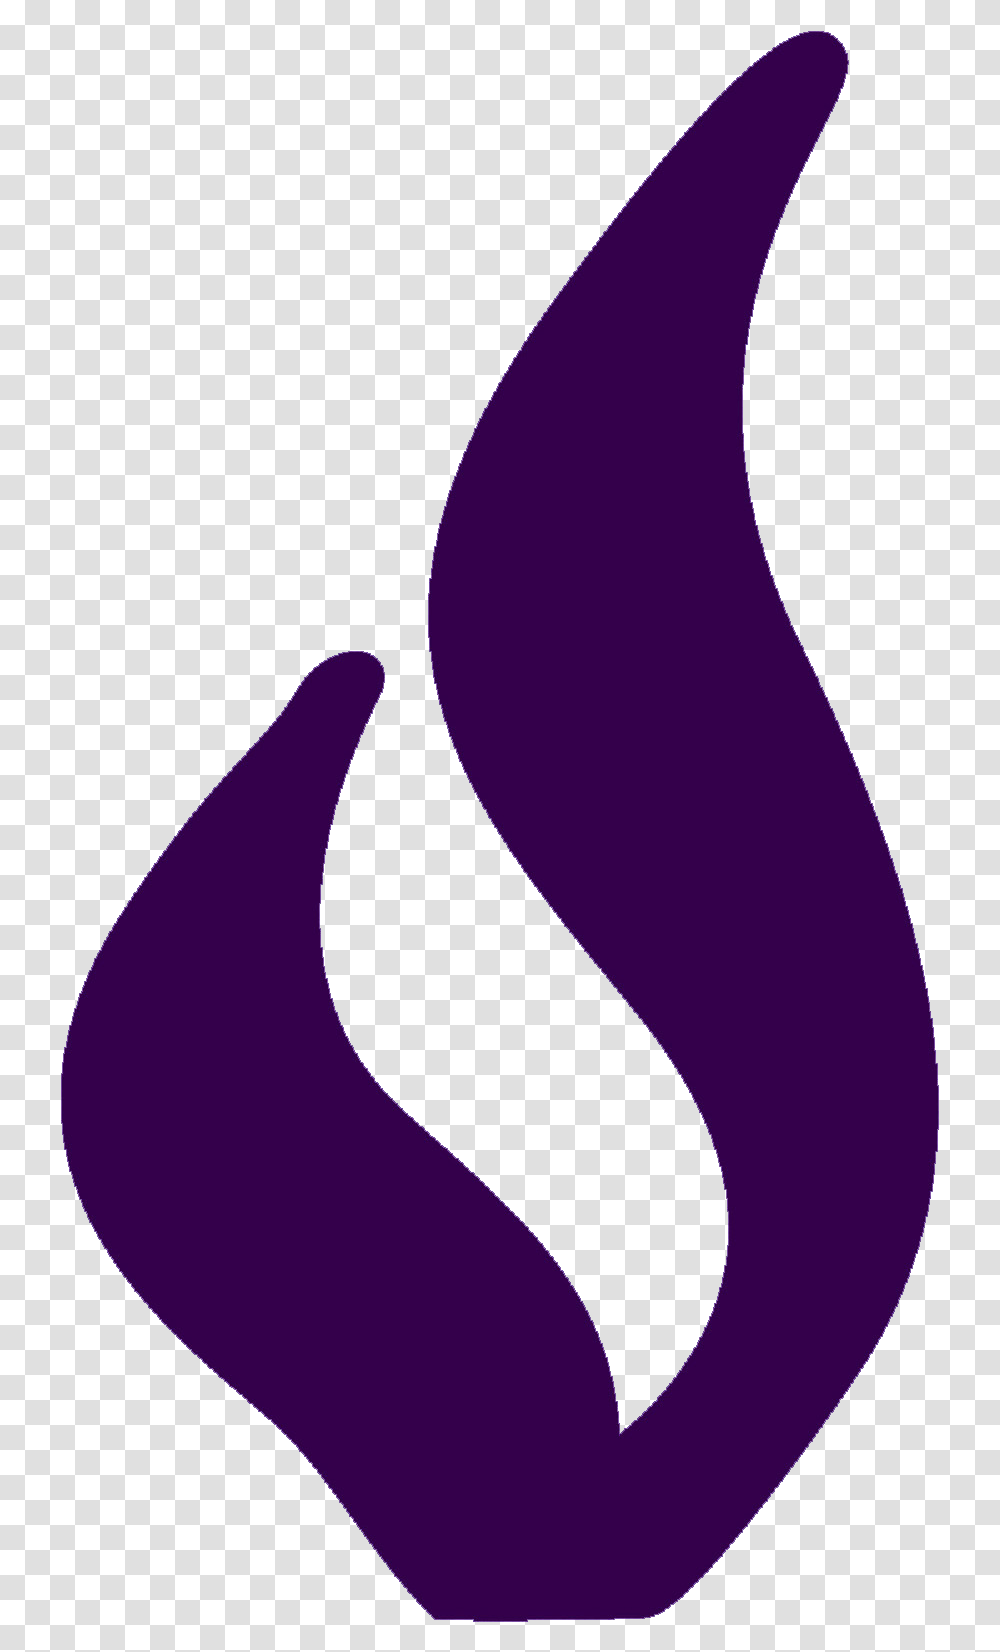 Purple Flame, Label, Apparel Transparent Png